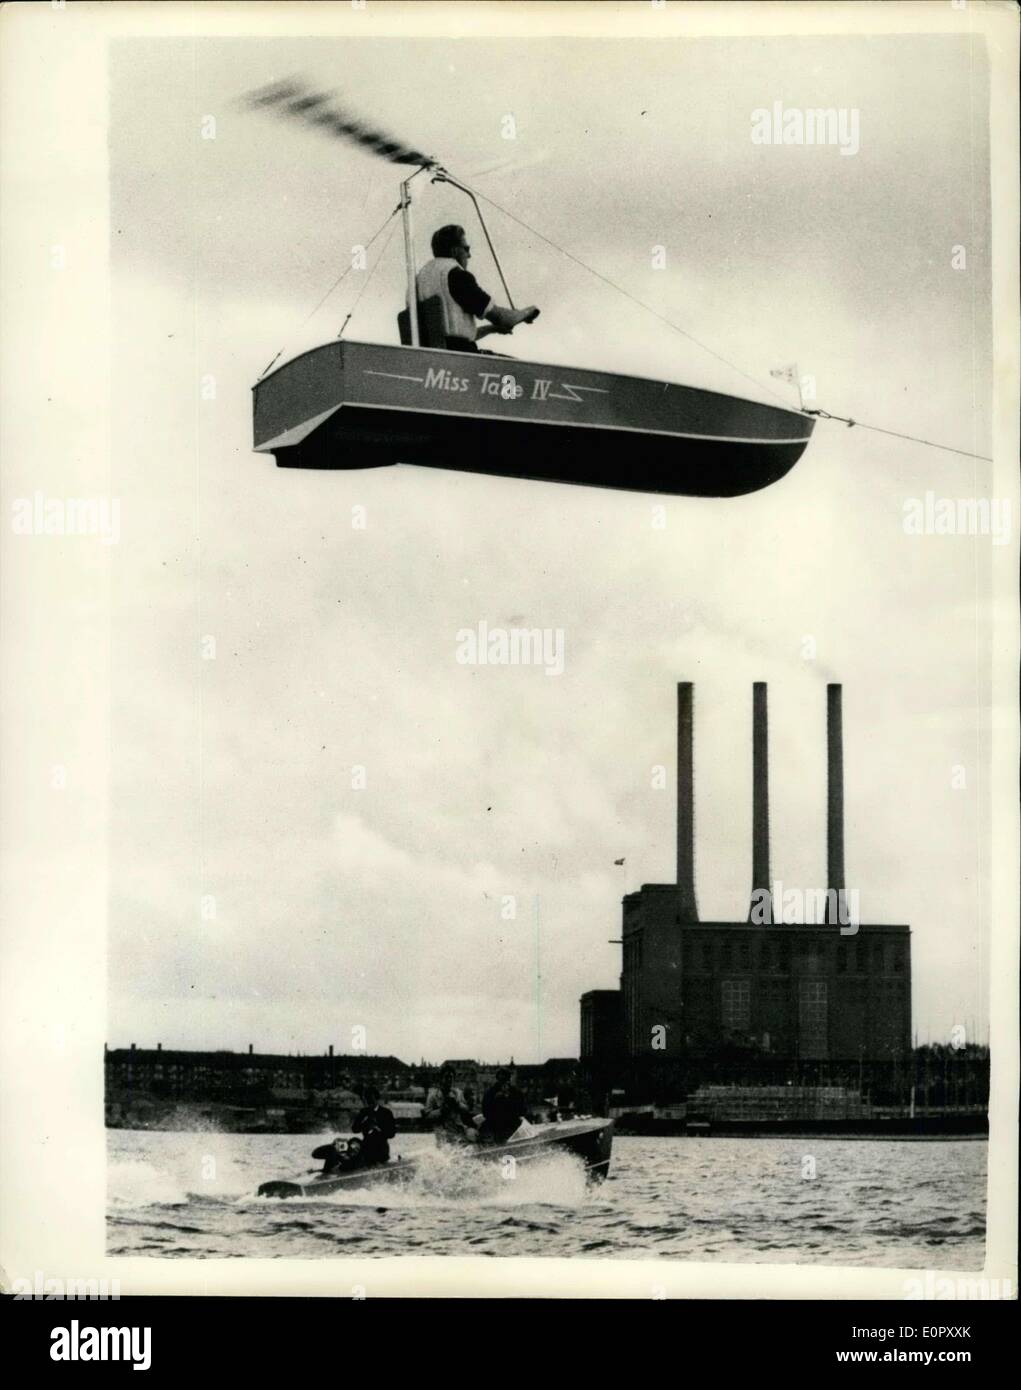 Juin 08, 1957 - L'hélicoptère bateau ? M. Bent Stig Moller, de Copenhague, a récemment fait une première sortie réussie dans son nouveau rotorglider, un petit bateau à 7 mètres de large qui prend la battre en l'air comme un hélicoptère. Cette rotorglider est le deuxième à être construit en Europe, la première étant construit en Suisse. Montre Photo : M. Bent Stig Moller, qui est également un expert du ski nautique, vu dans son rotorglider sur le port de Copenhague. Keystone Banque D'Images